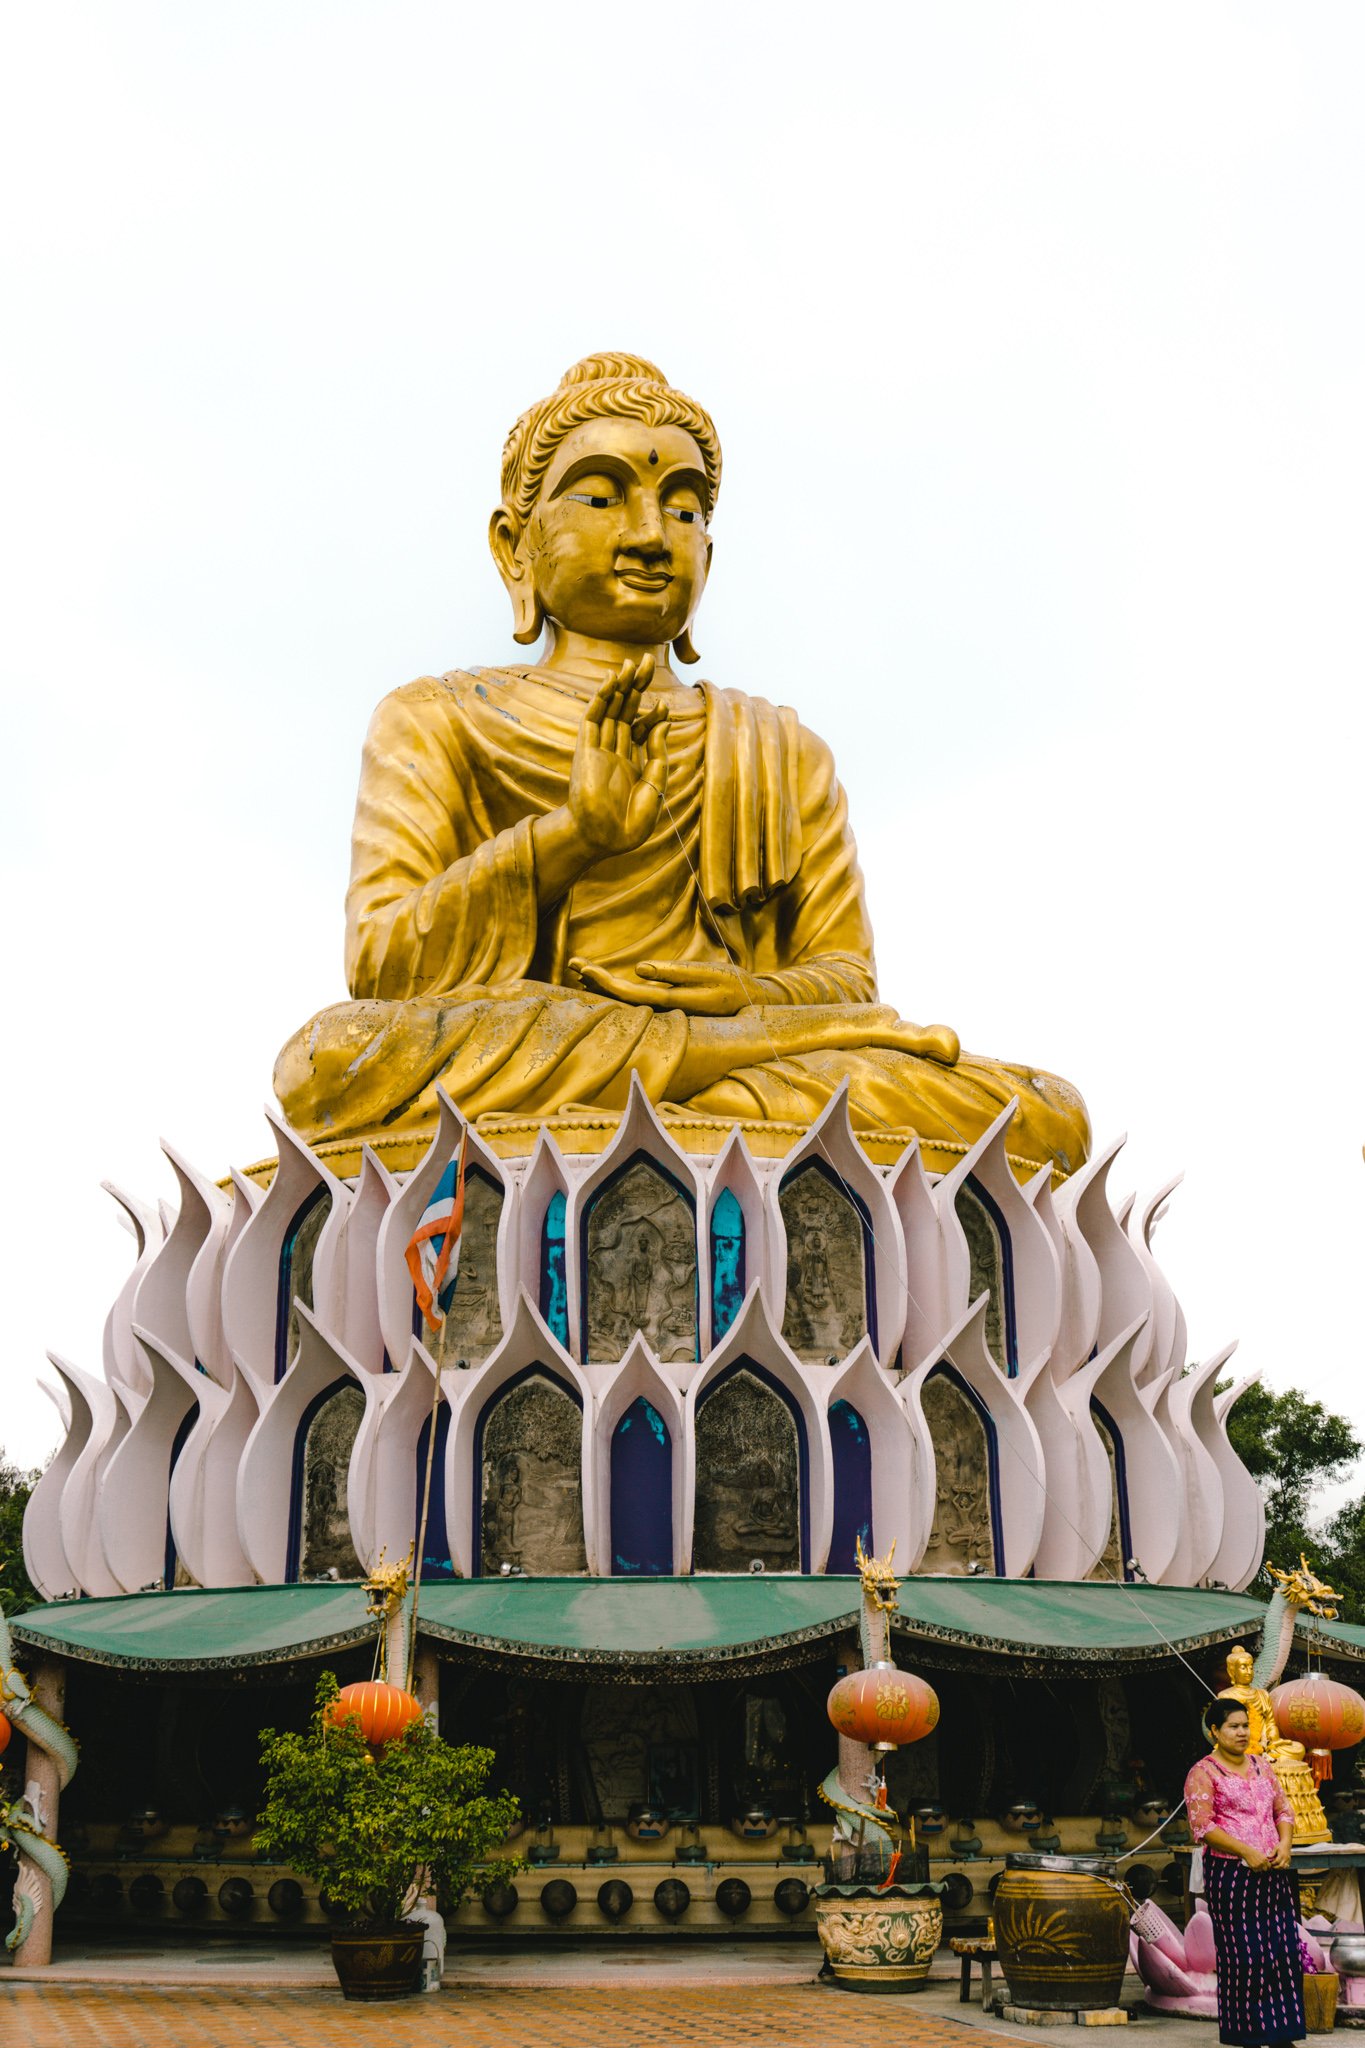 Big Buddha statue at Wat Samphran